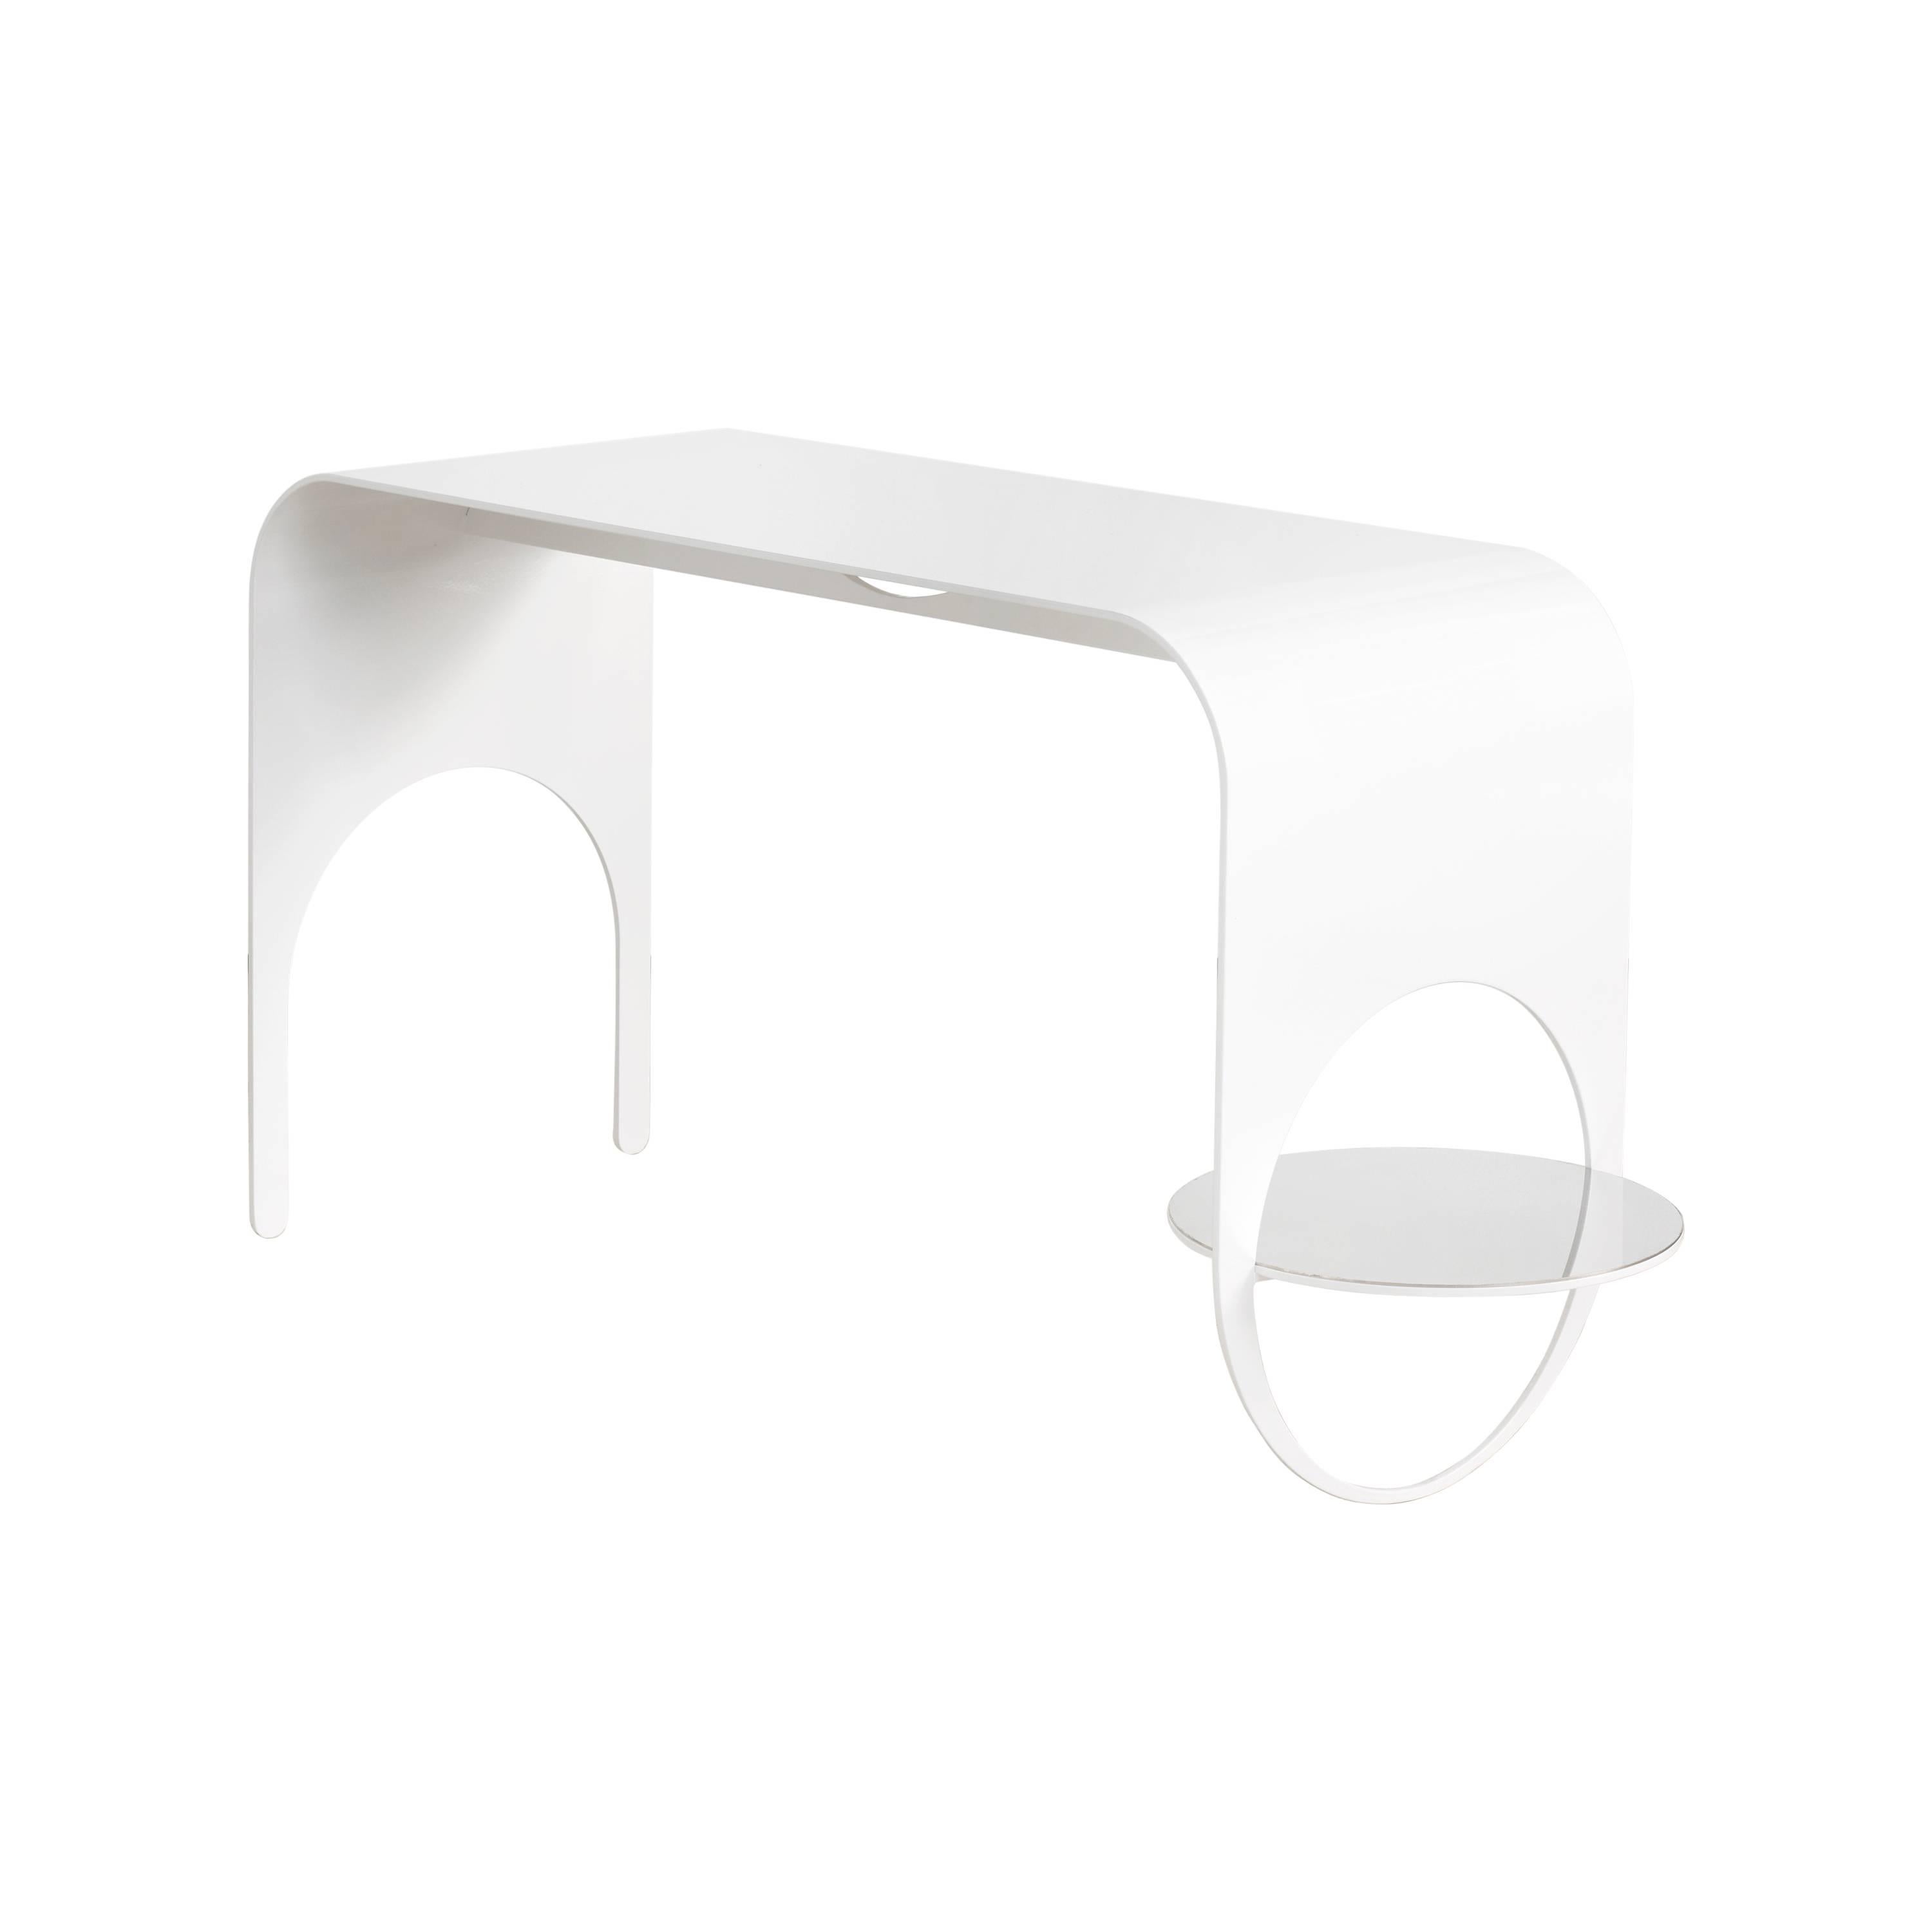 Thin Tisch 2 in zeitgenössischem Weiß pulverbeschichtetem Stahl und poliertem Stahl Regal